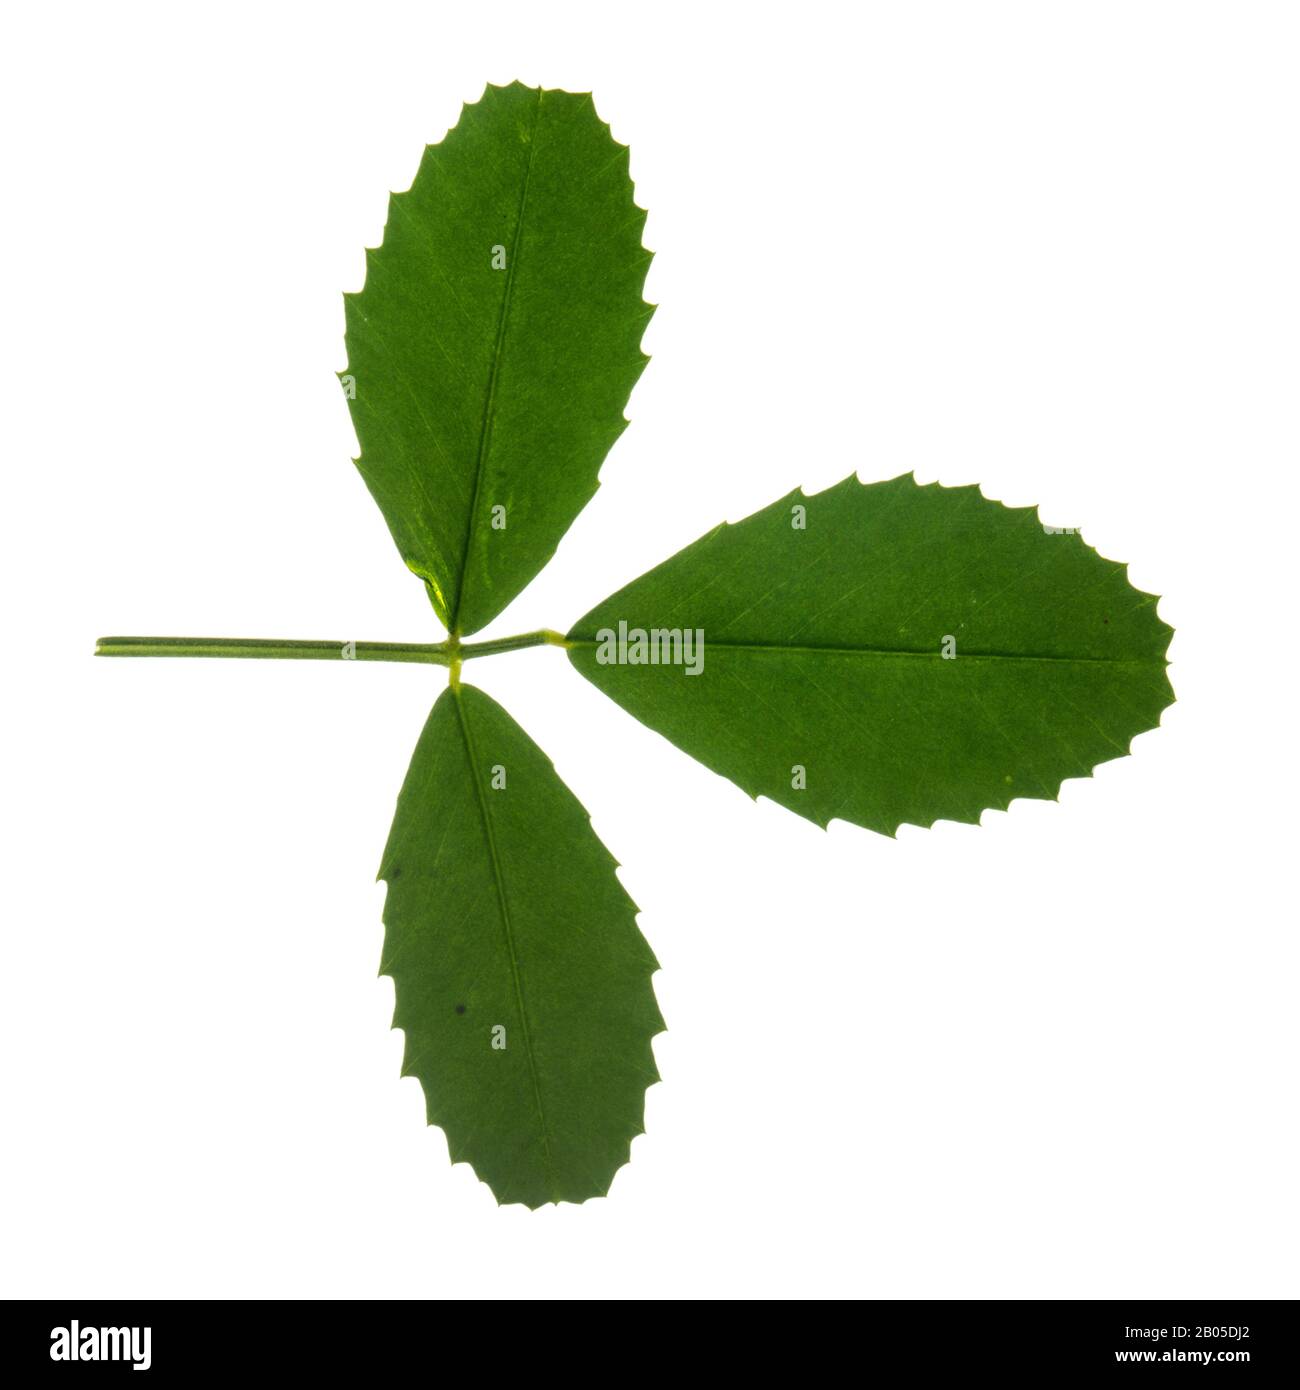 white melilot, white sweetclover (Melilotus albus, Melilotus alba), leaf, cutout, Germany Stock Photo